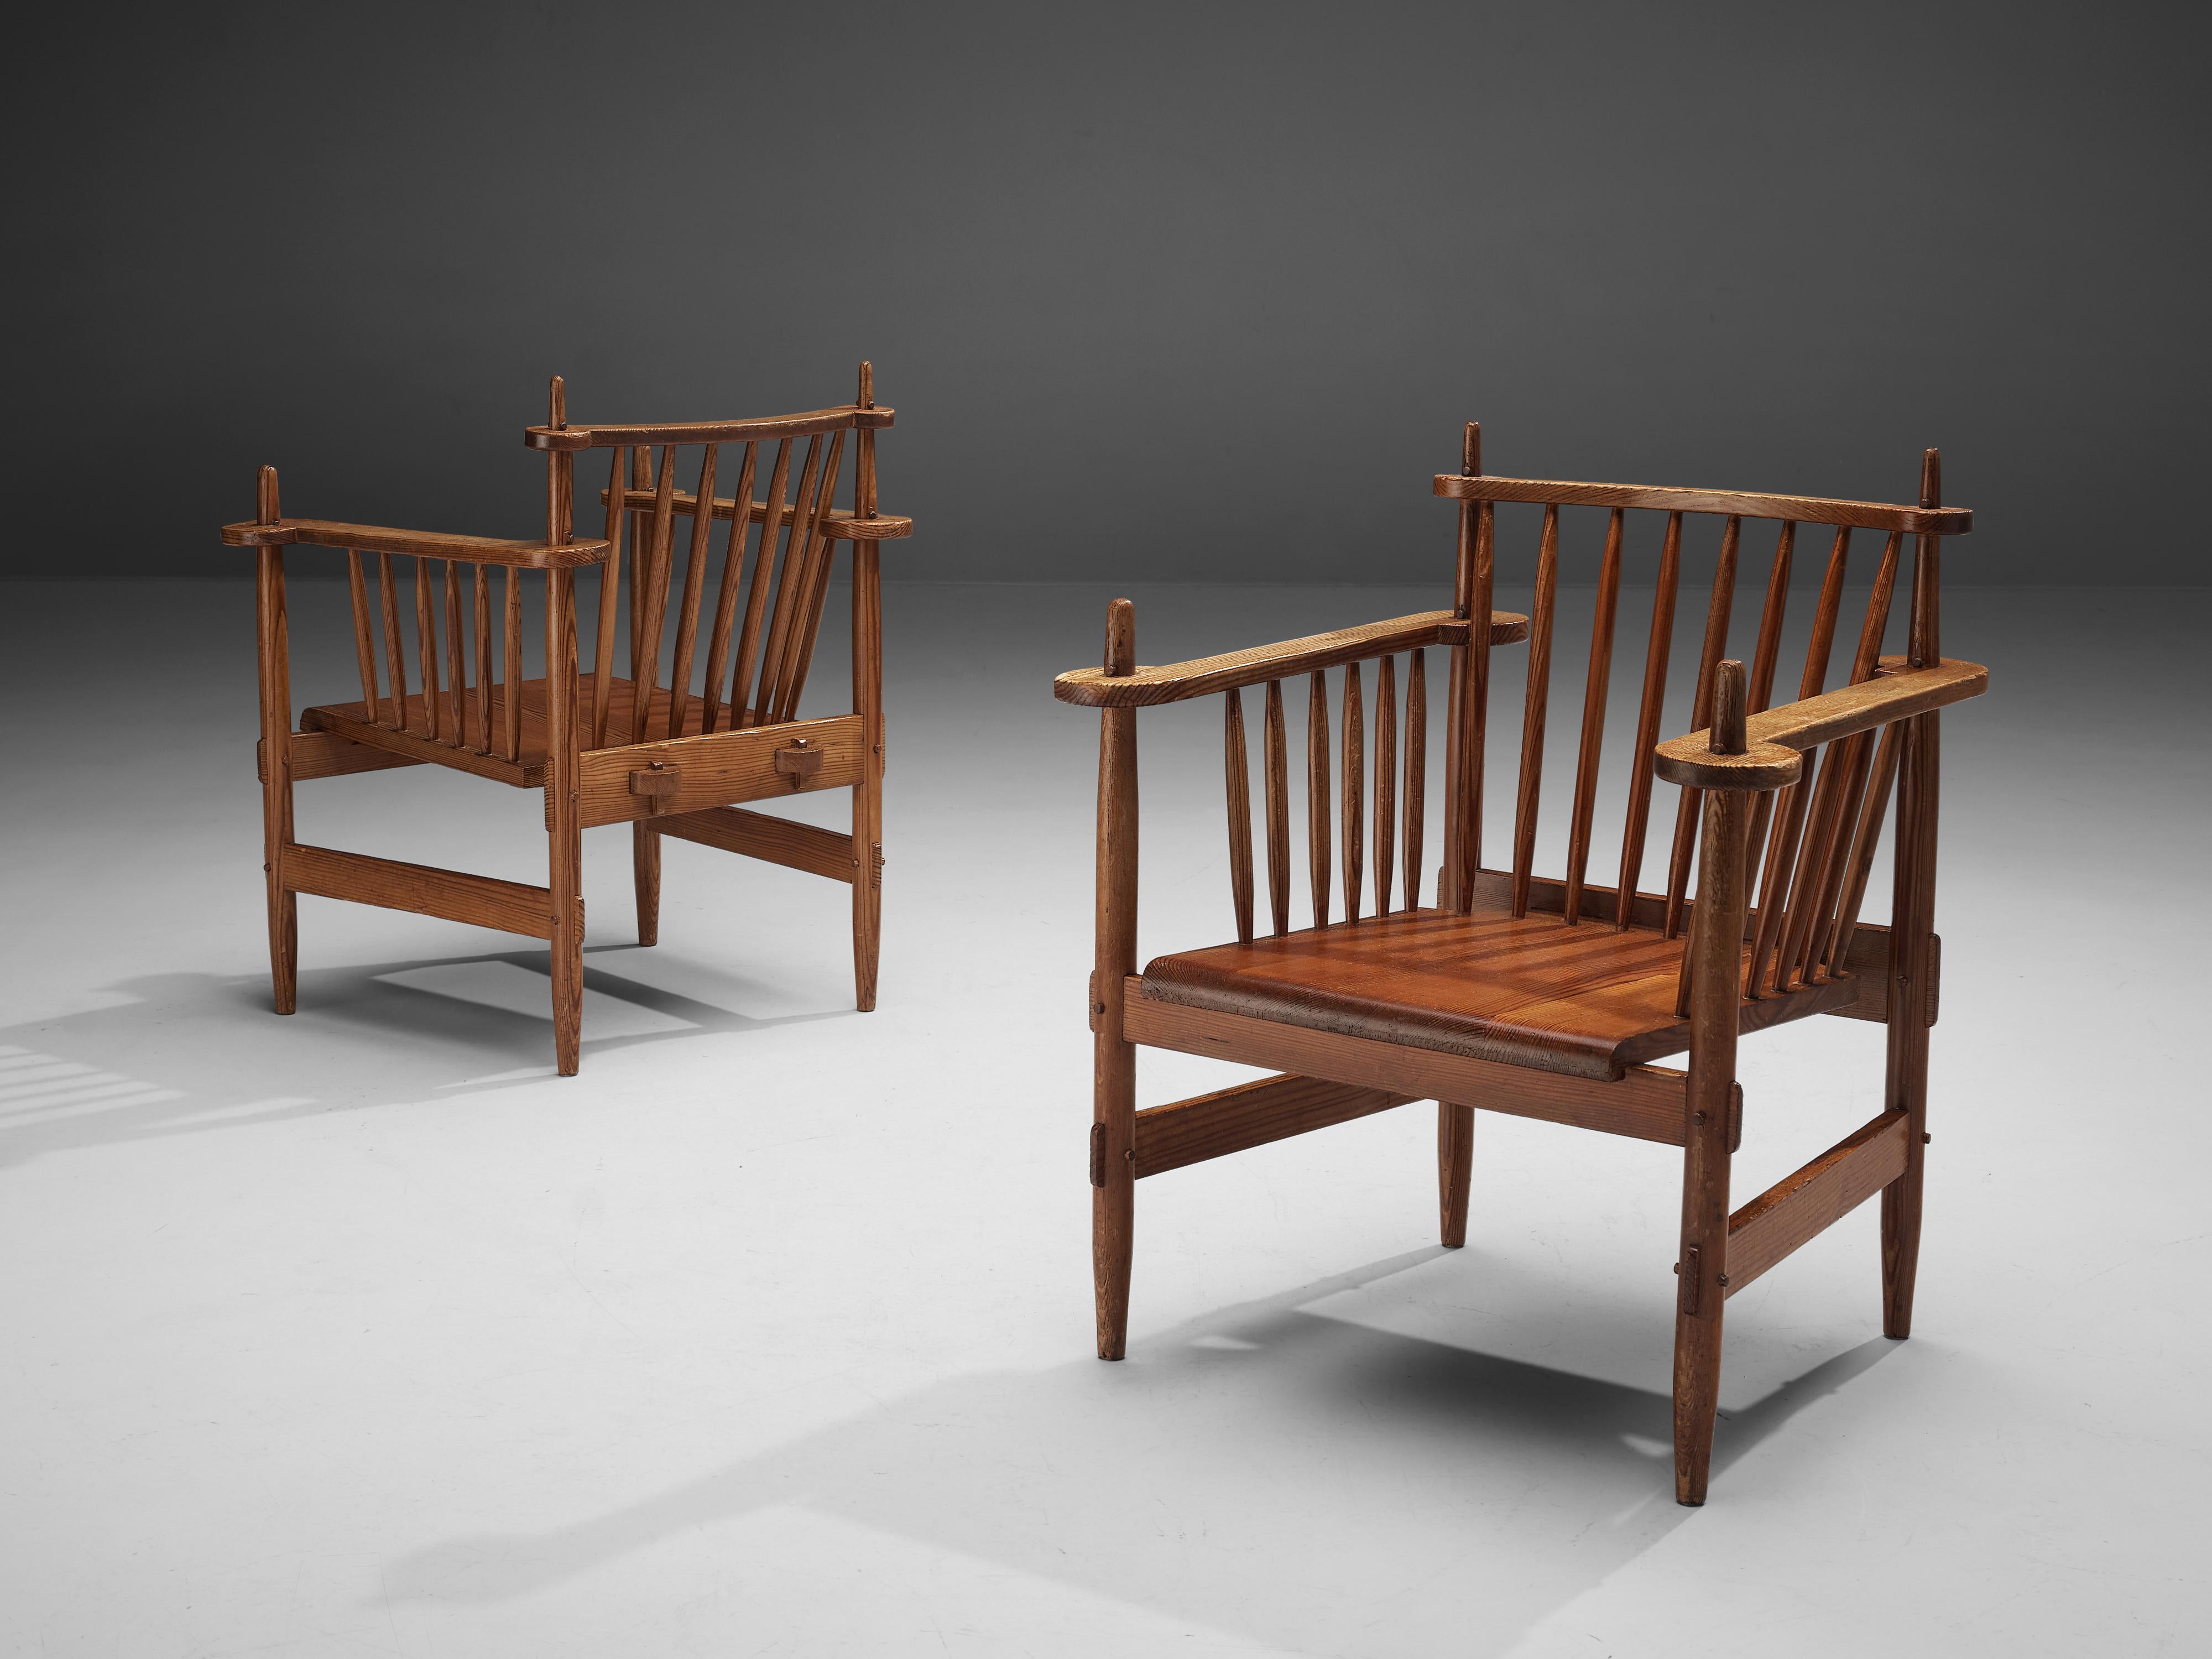 Paar Sessel, Kiefer, Niederlande, 1950er Jahre

Diese Stühle holländischen Ursprungs sind mit großem Geschick konstruiert und verkörpern ein rustikales und doch sehr modernes Gefühl. Das robuste Gestell besteht aus mehreren runden Spindeln, die den